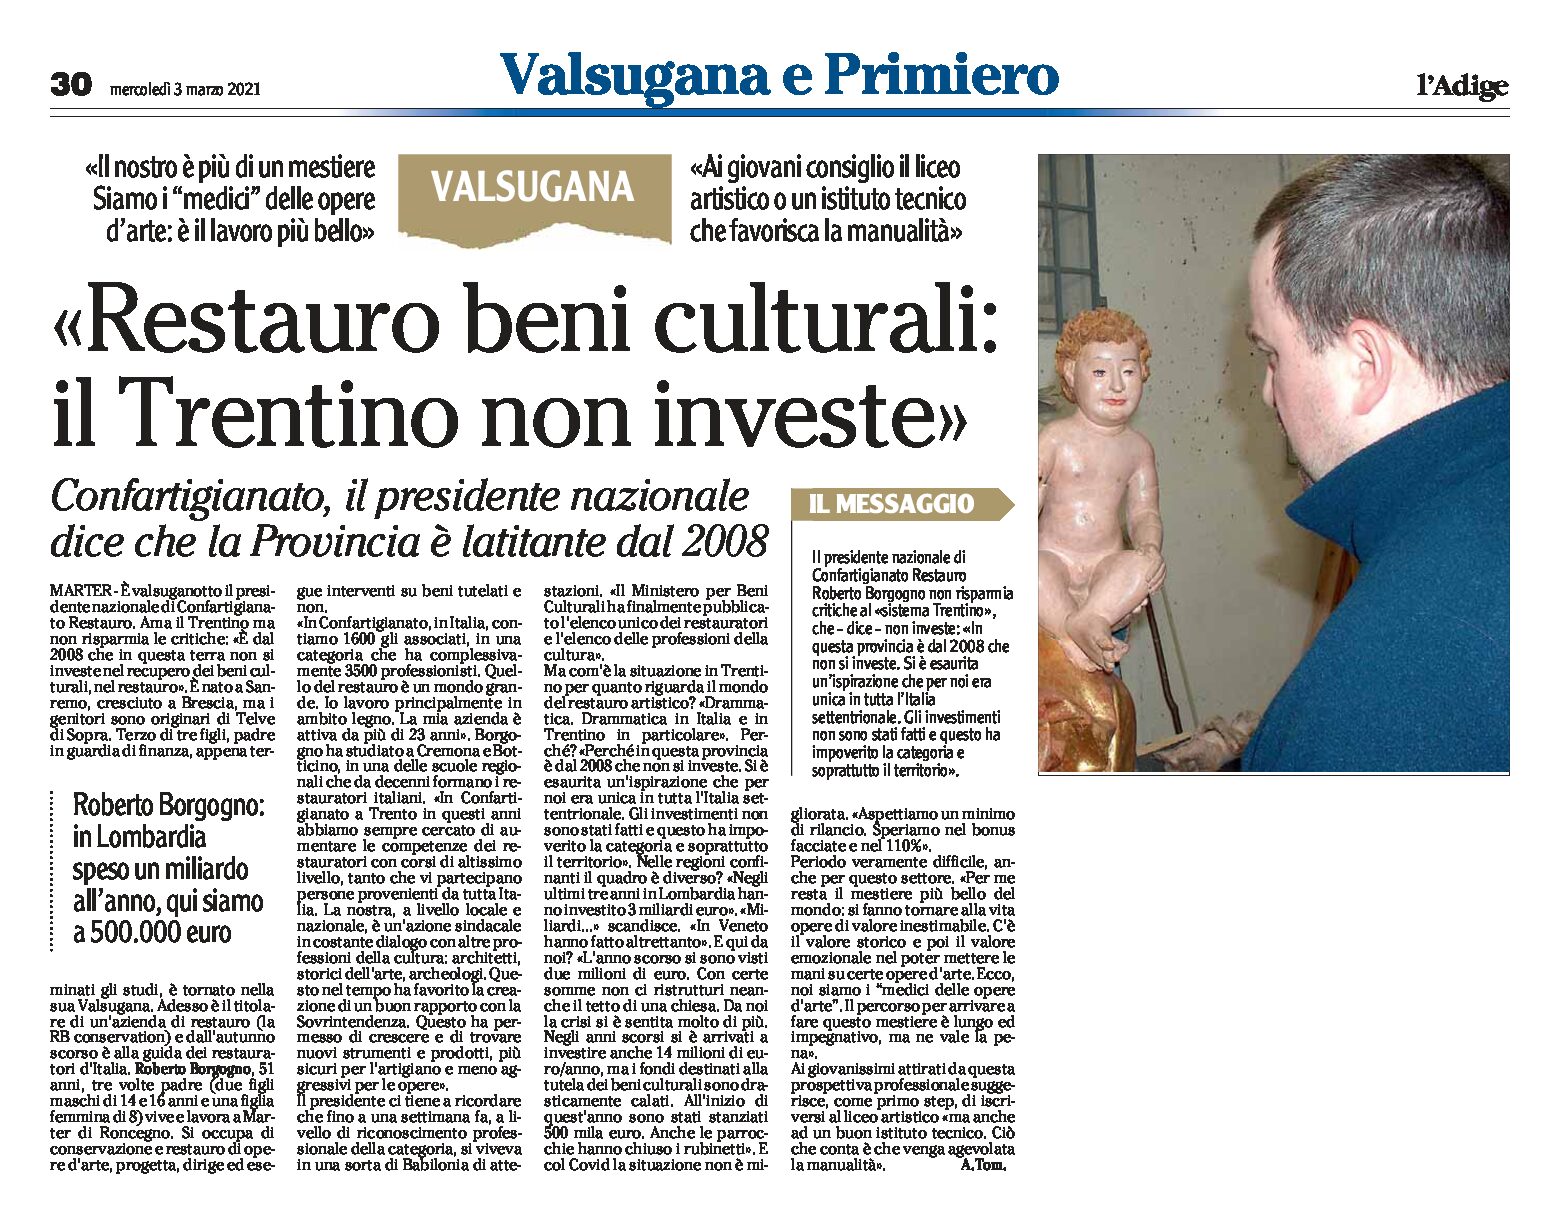 Confartigianato Restauro: “beni culturali, il Trentino non investe” intervista a Borgogno